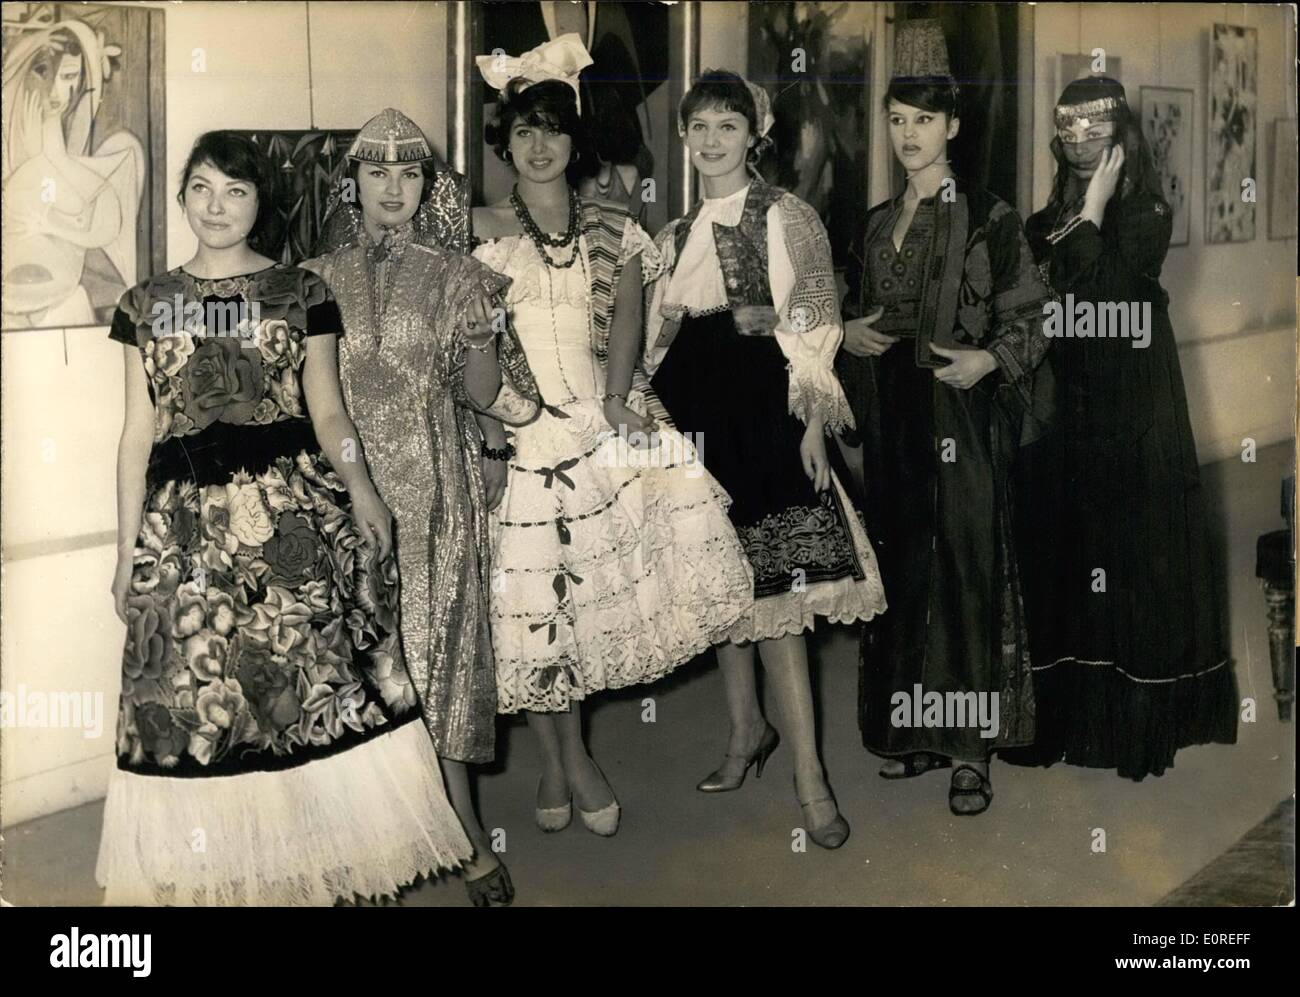 4. April 1959 - National Dress Show In Paris: Ein nationales Kleid Show mit Kleidern von jedem Land der Welt hat im Museum für moderne Kunst in Paris heute statt. Foto zeigt sechs charmante Modelle präsentieren nationale Kleider: von links nach rechts: Mexiko - Tunis - Brasilien - Czechozlovakia Jordanien - Ägypten. Stockfoto